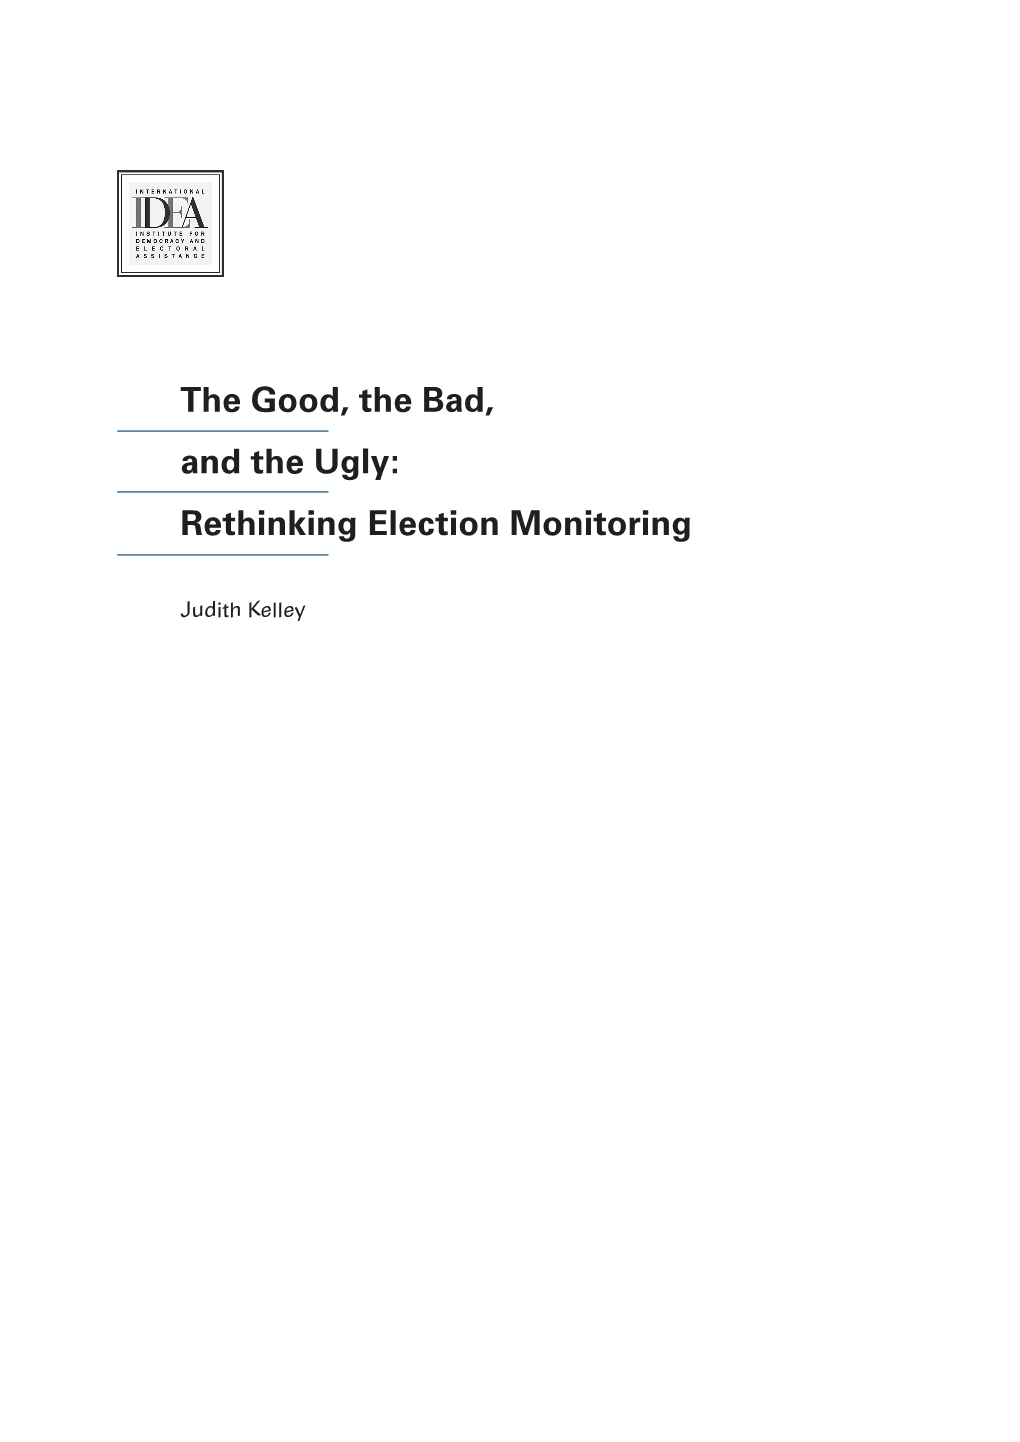 Rethinking Election Monitoring